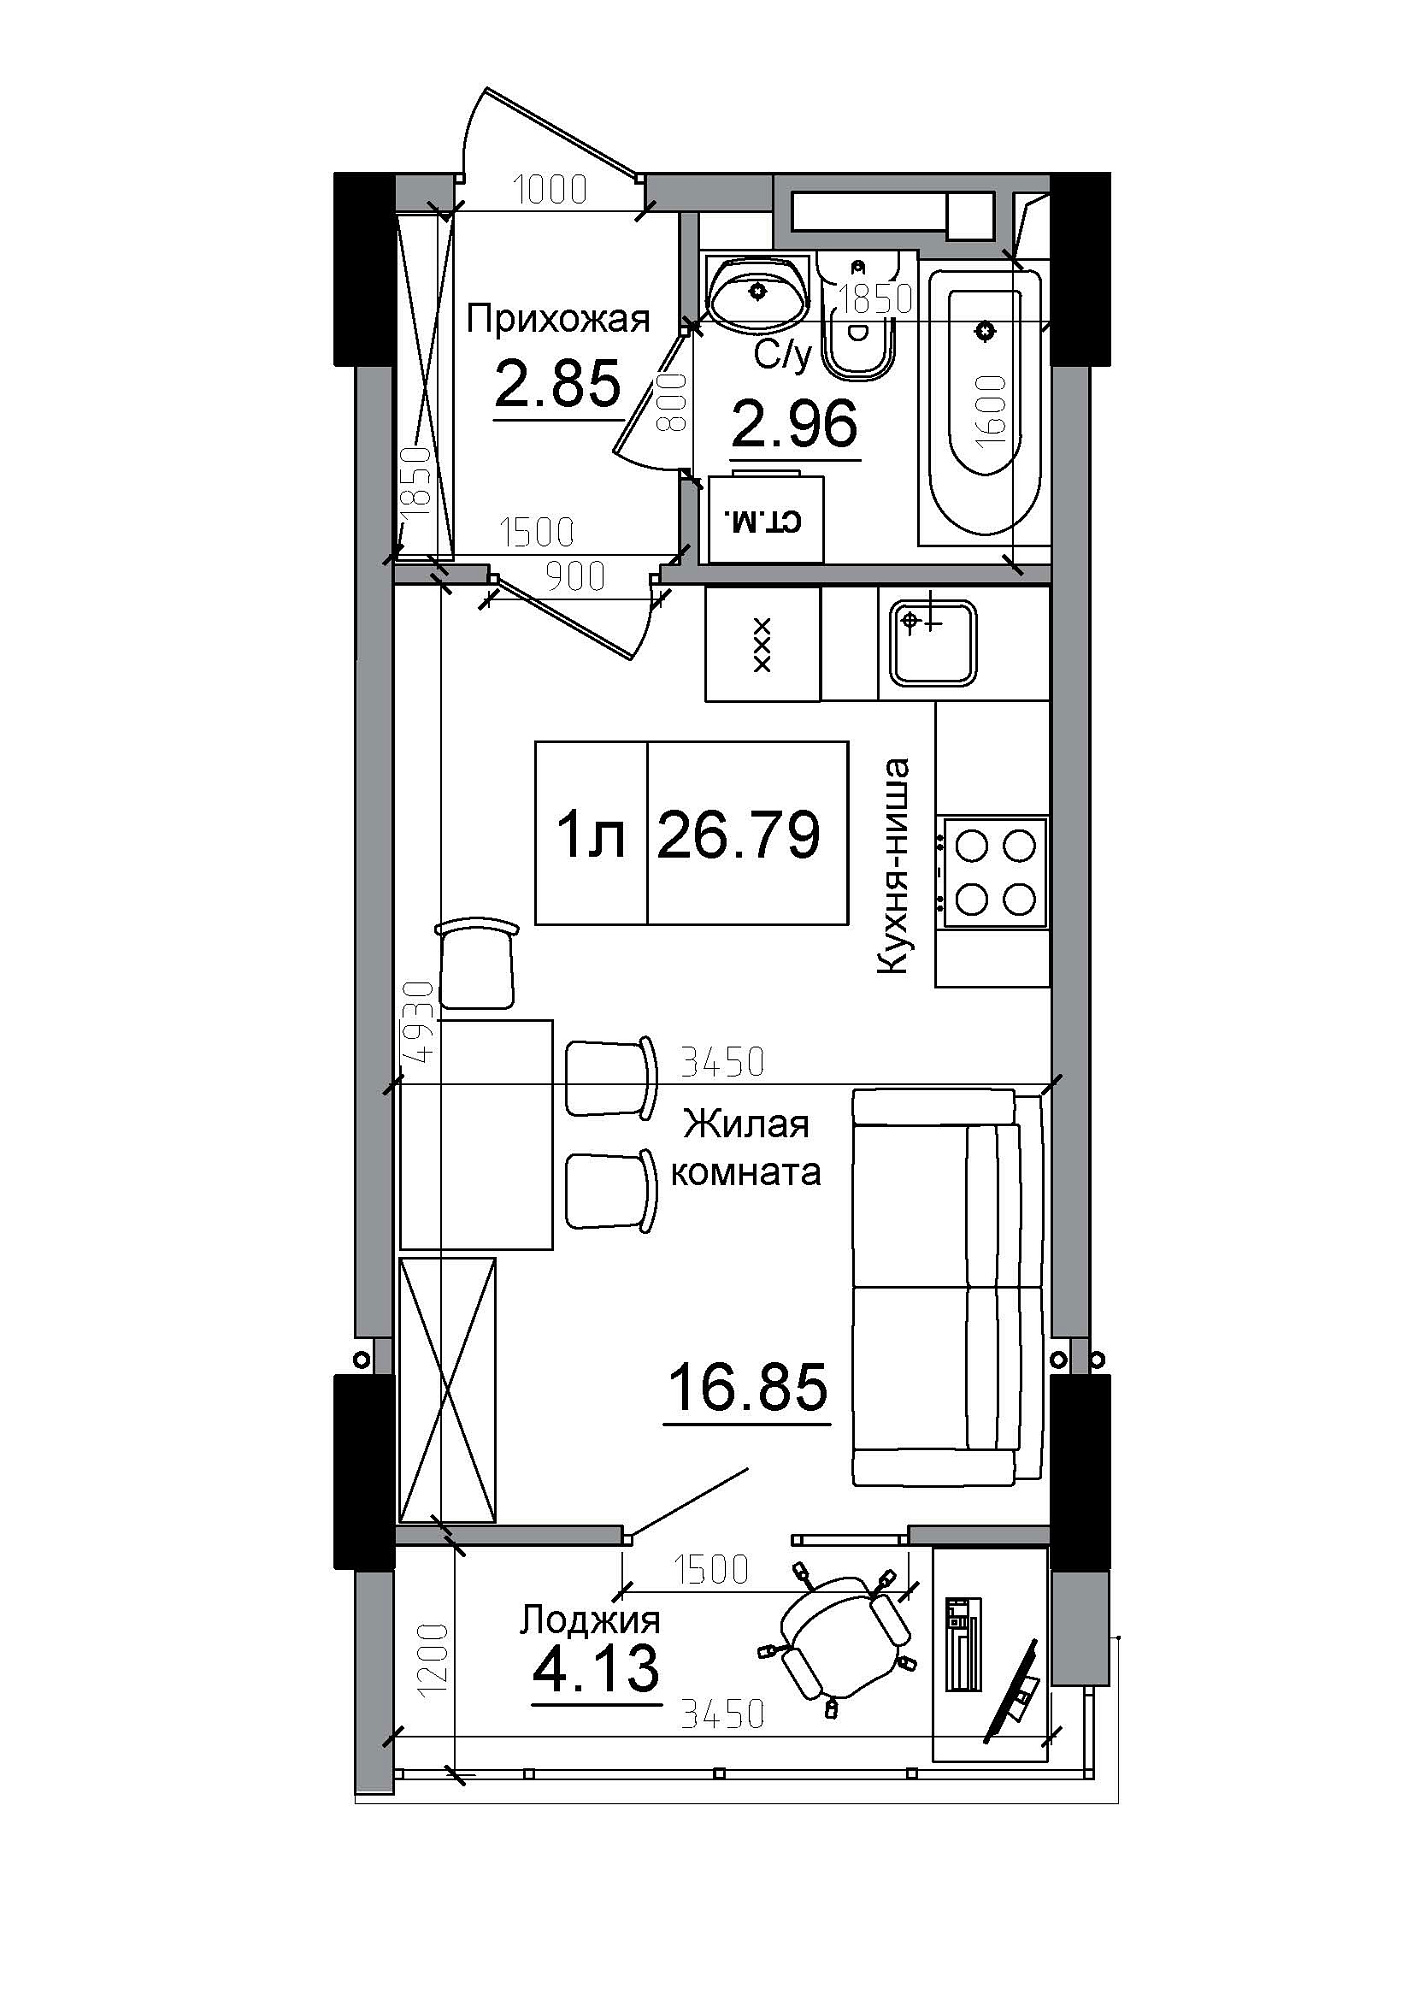 Планування Smart-квартира площею 26.79м2, AB-12-12/00014.